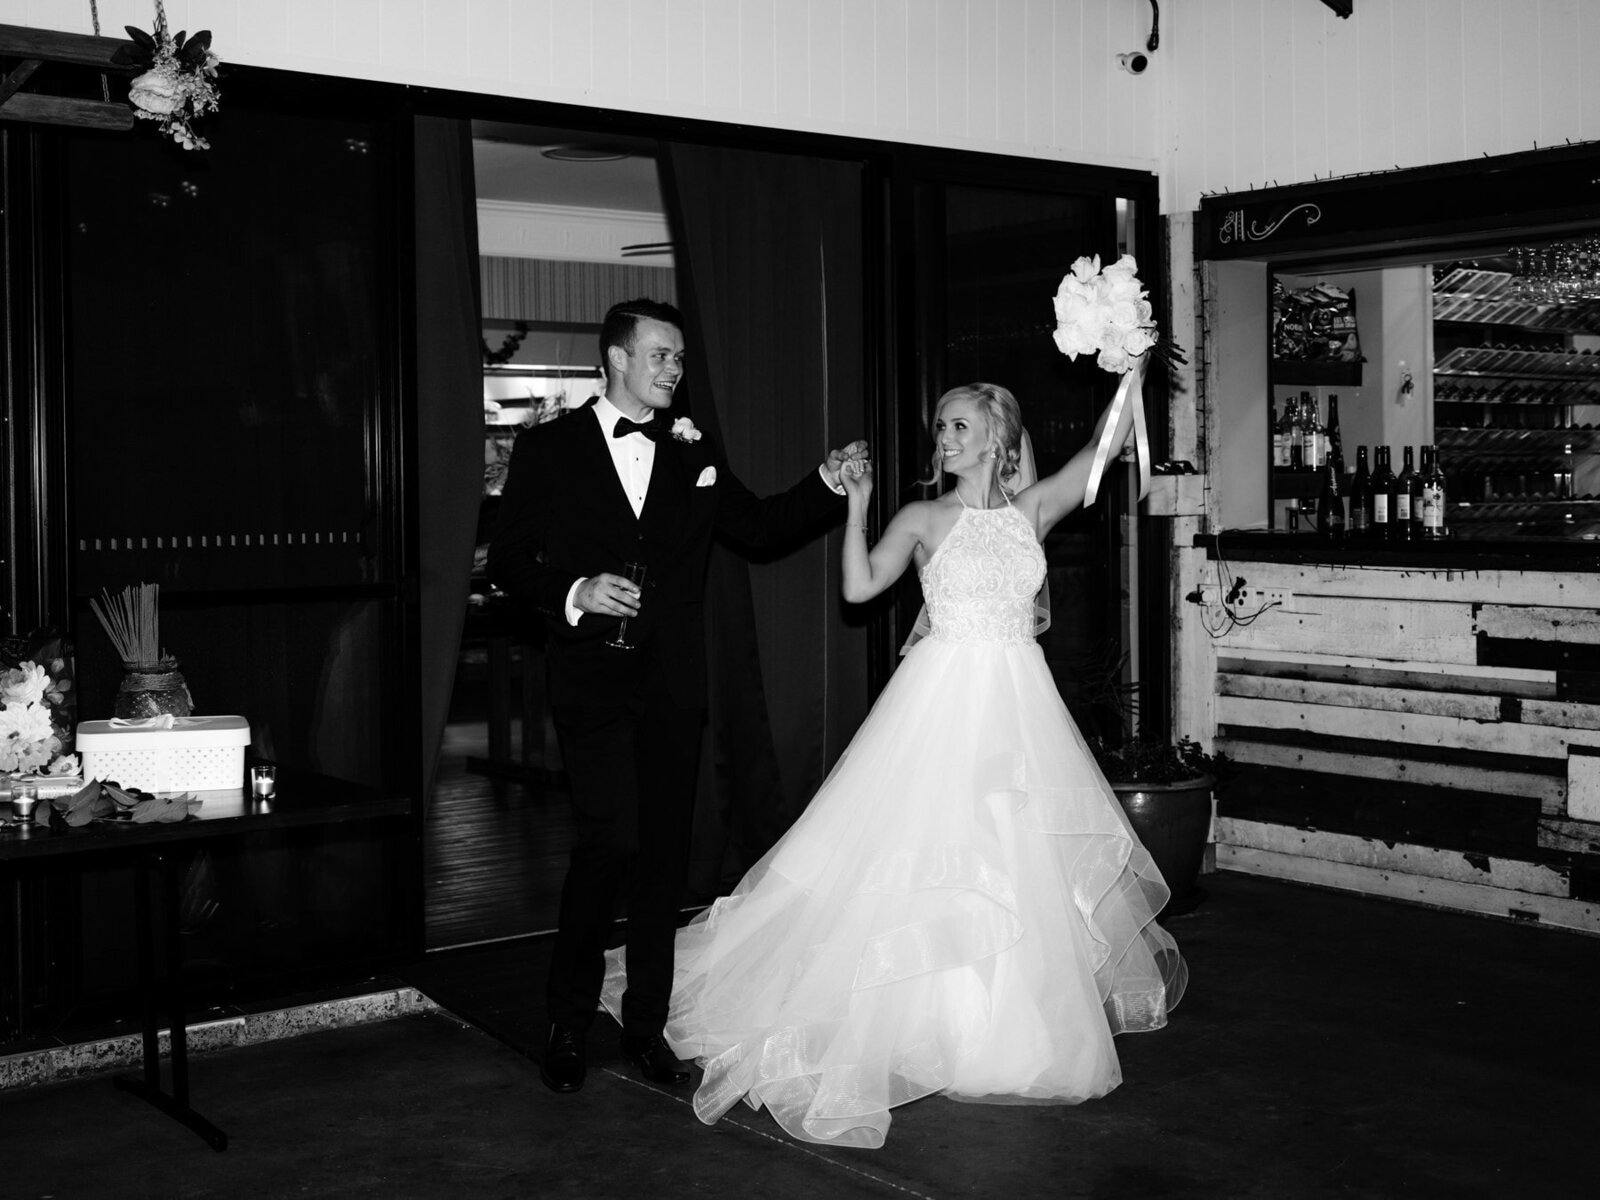 Bride and groom enter wedding reception at Austinvilla Estate